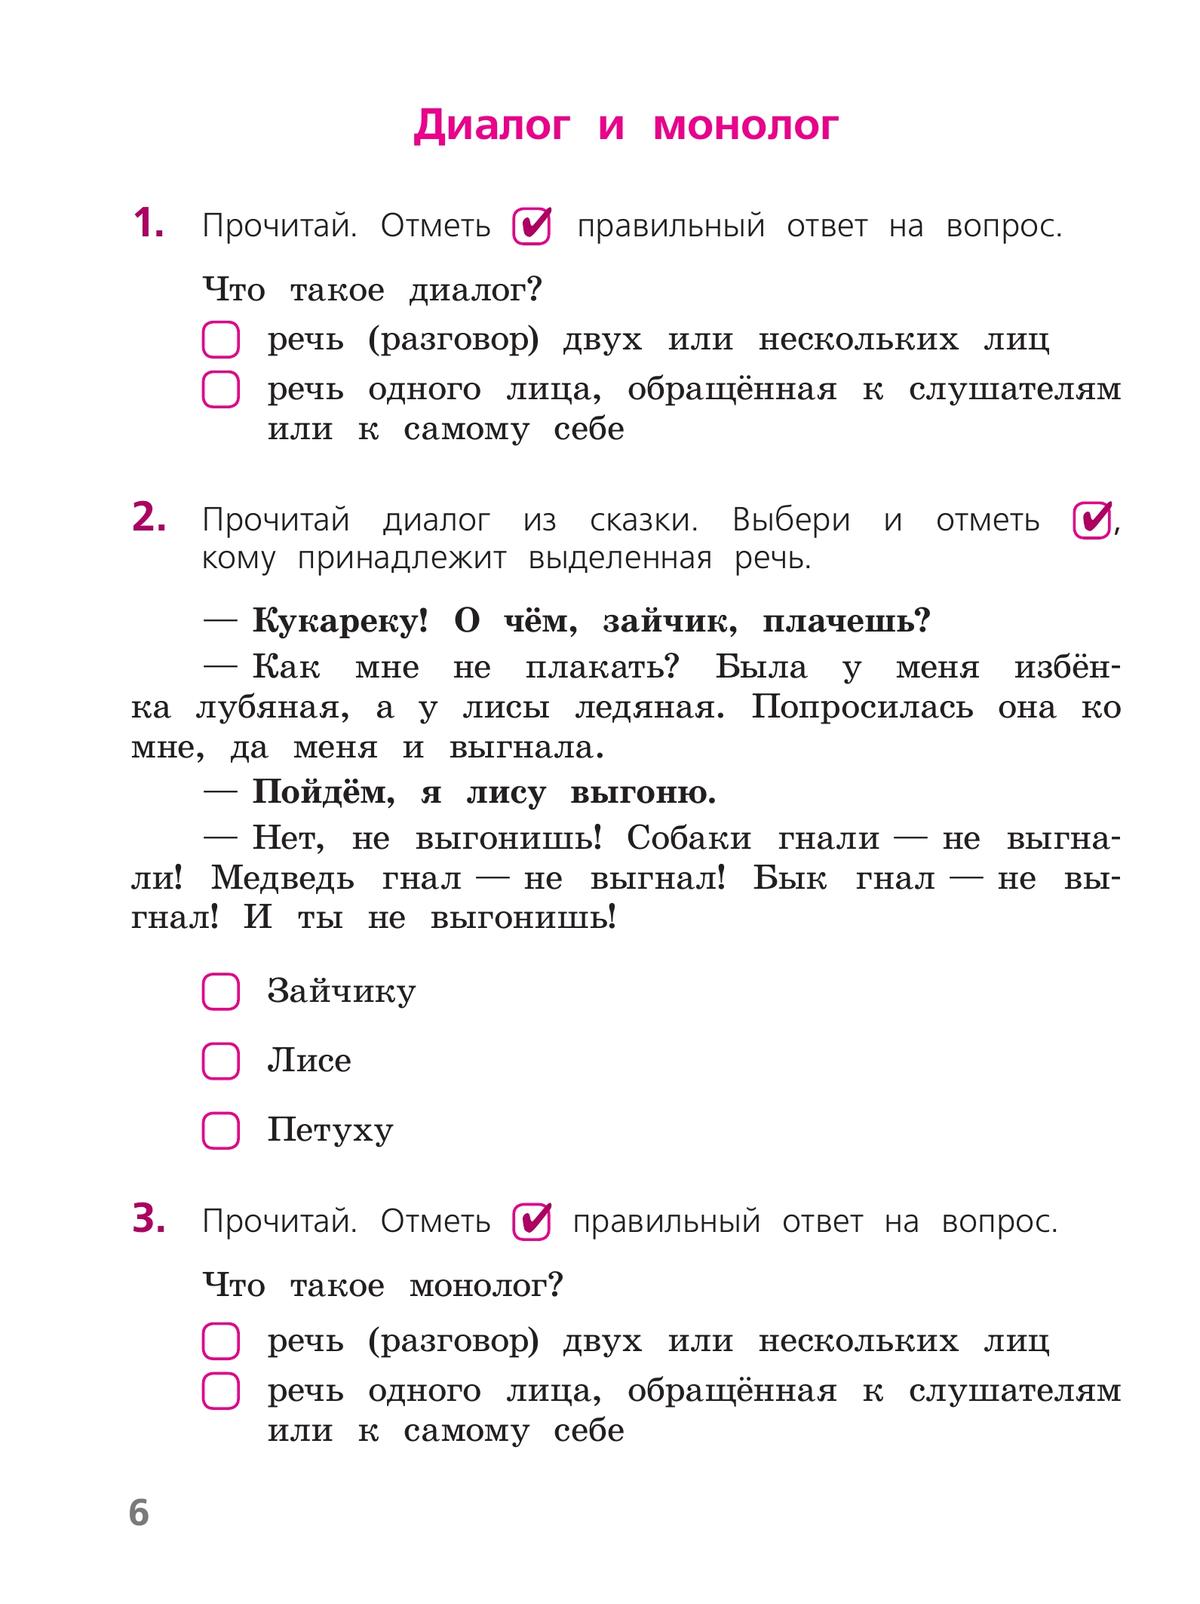 Русский язык. Тетрадь учебных достижений. 2 класс 8